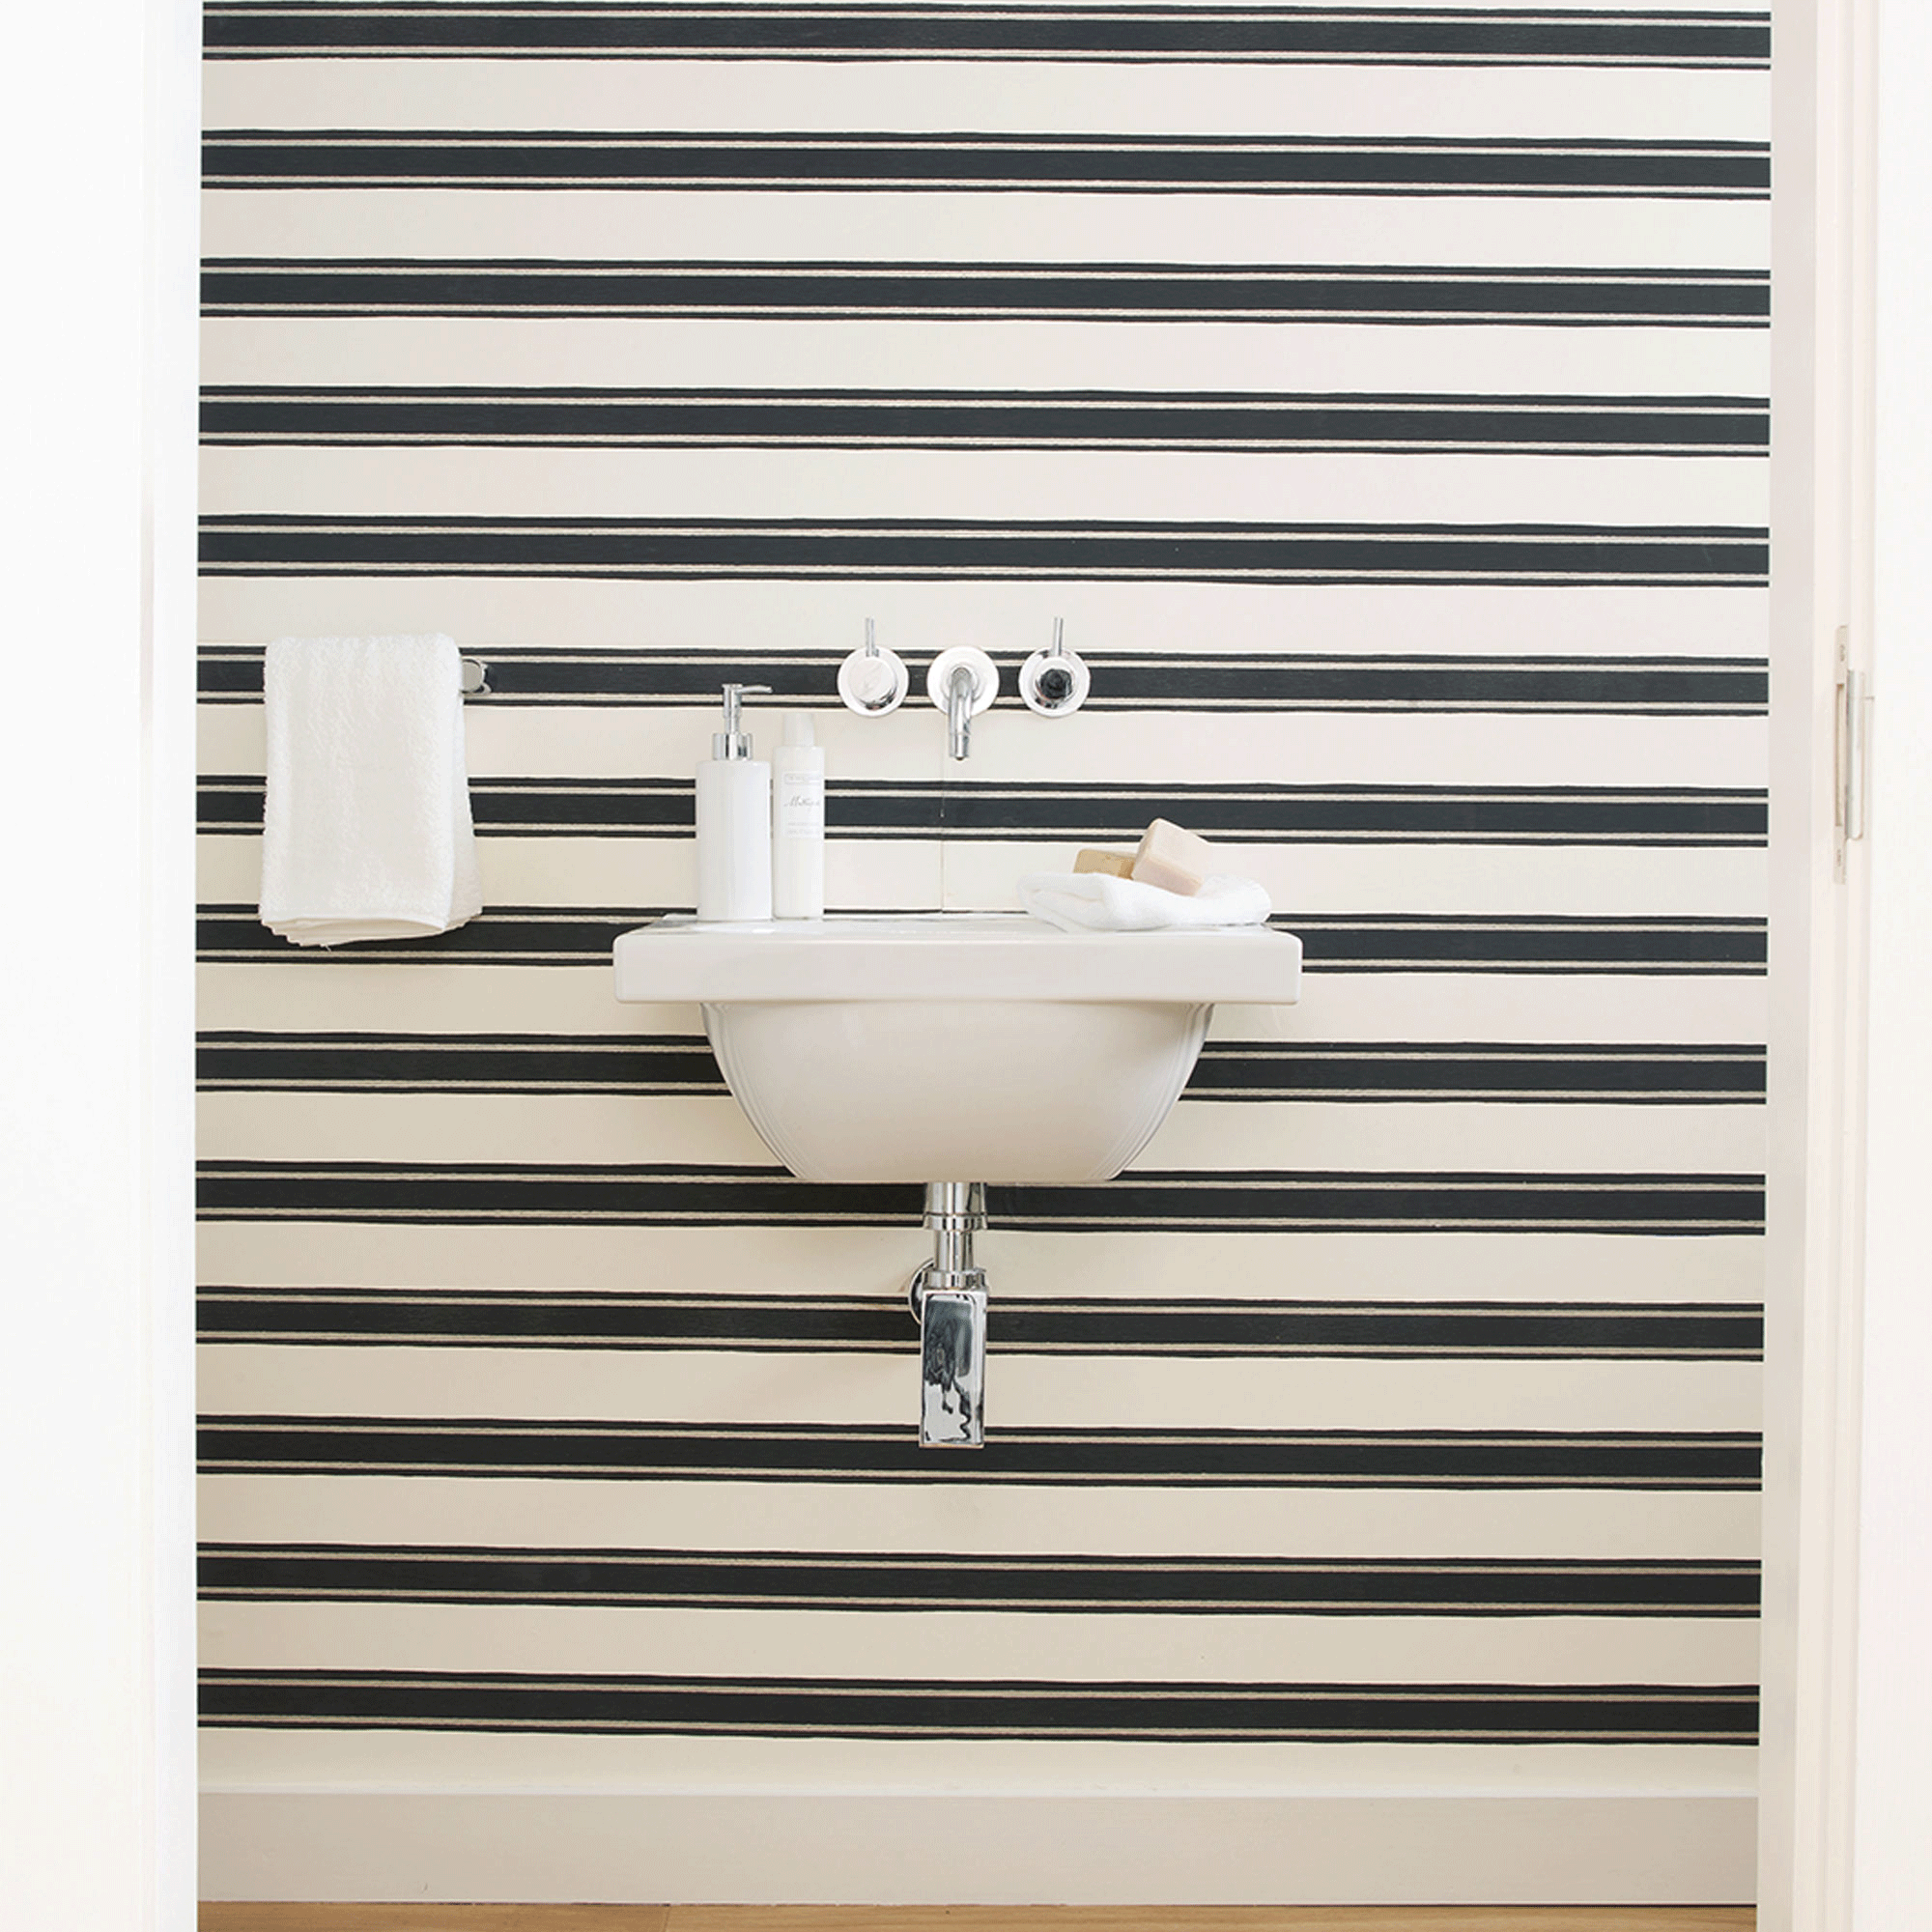 striped bathroom